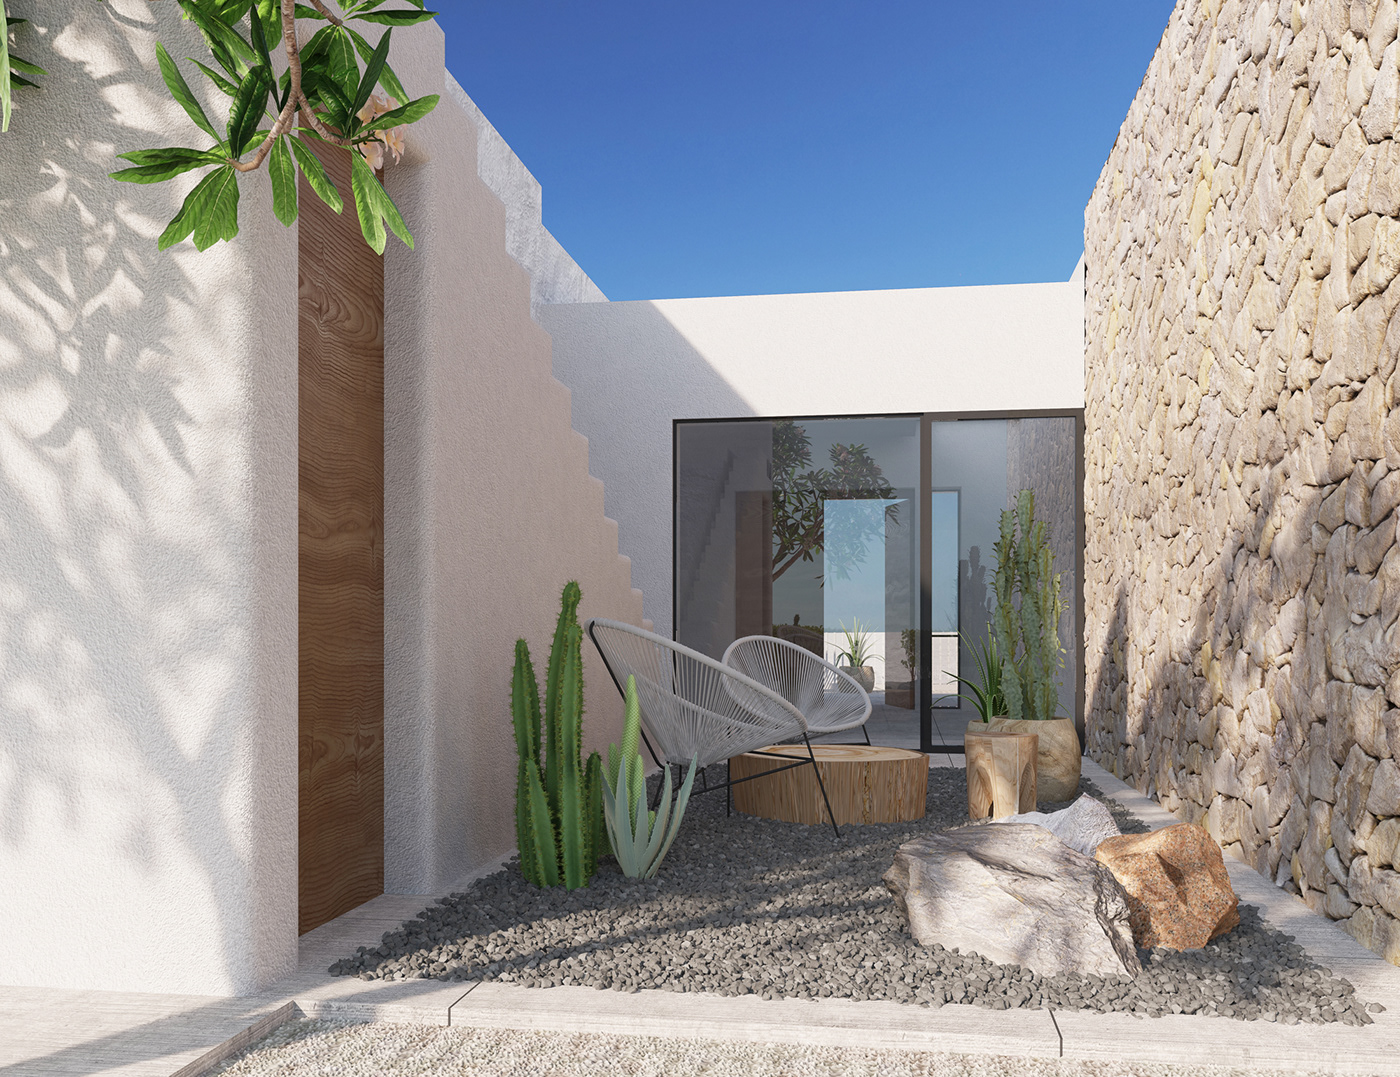 architecture rendering 3dmax visualization building coastal Villa design Interior Landscape